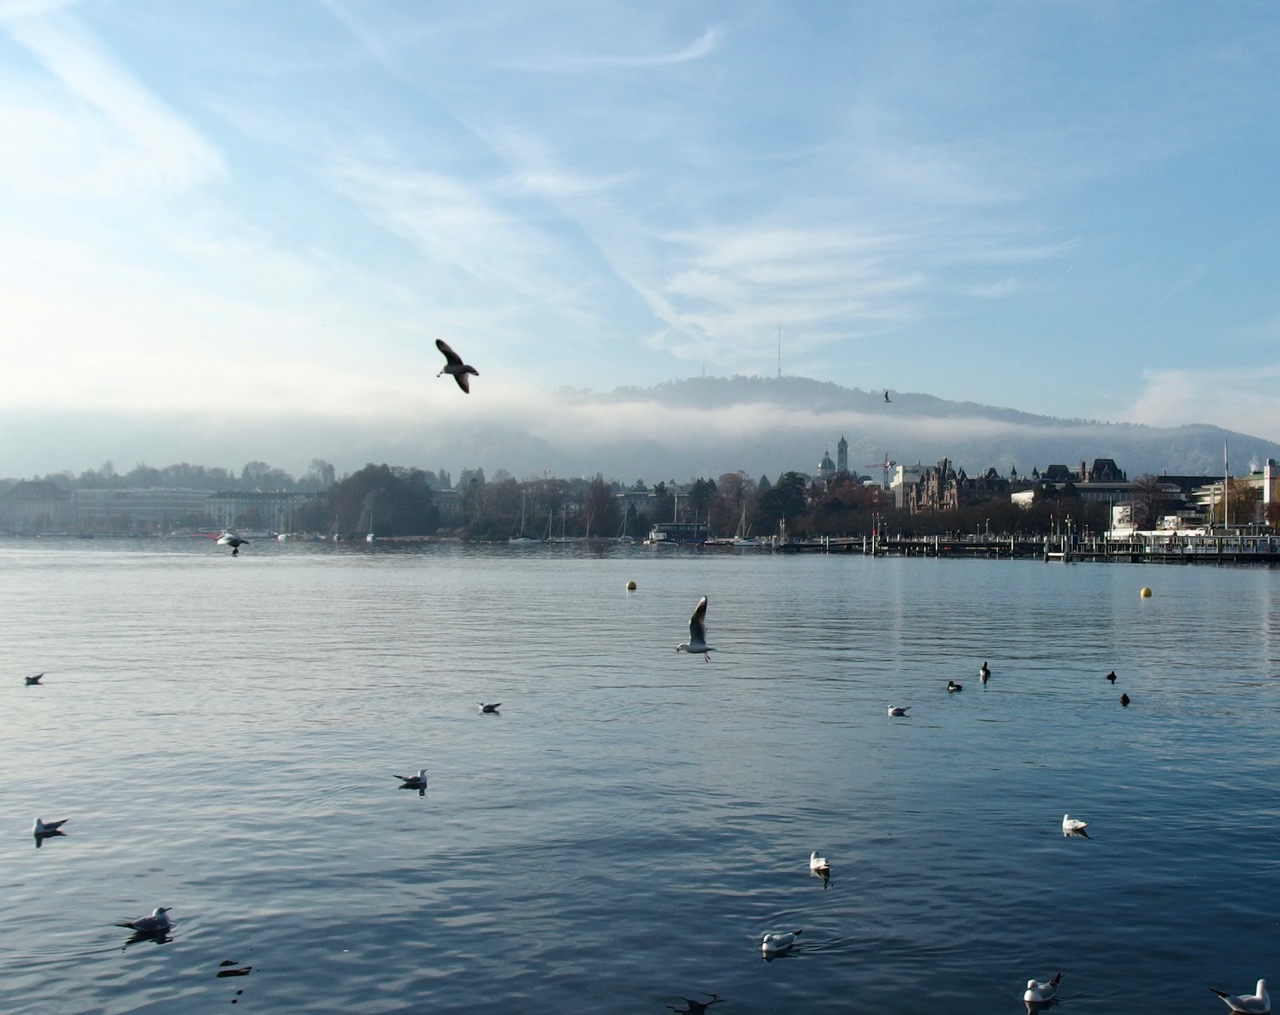 Lake, Zurich, Switzerland